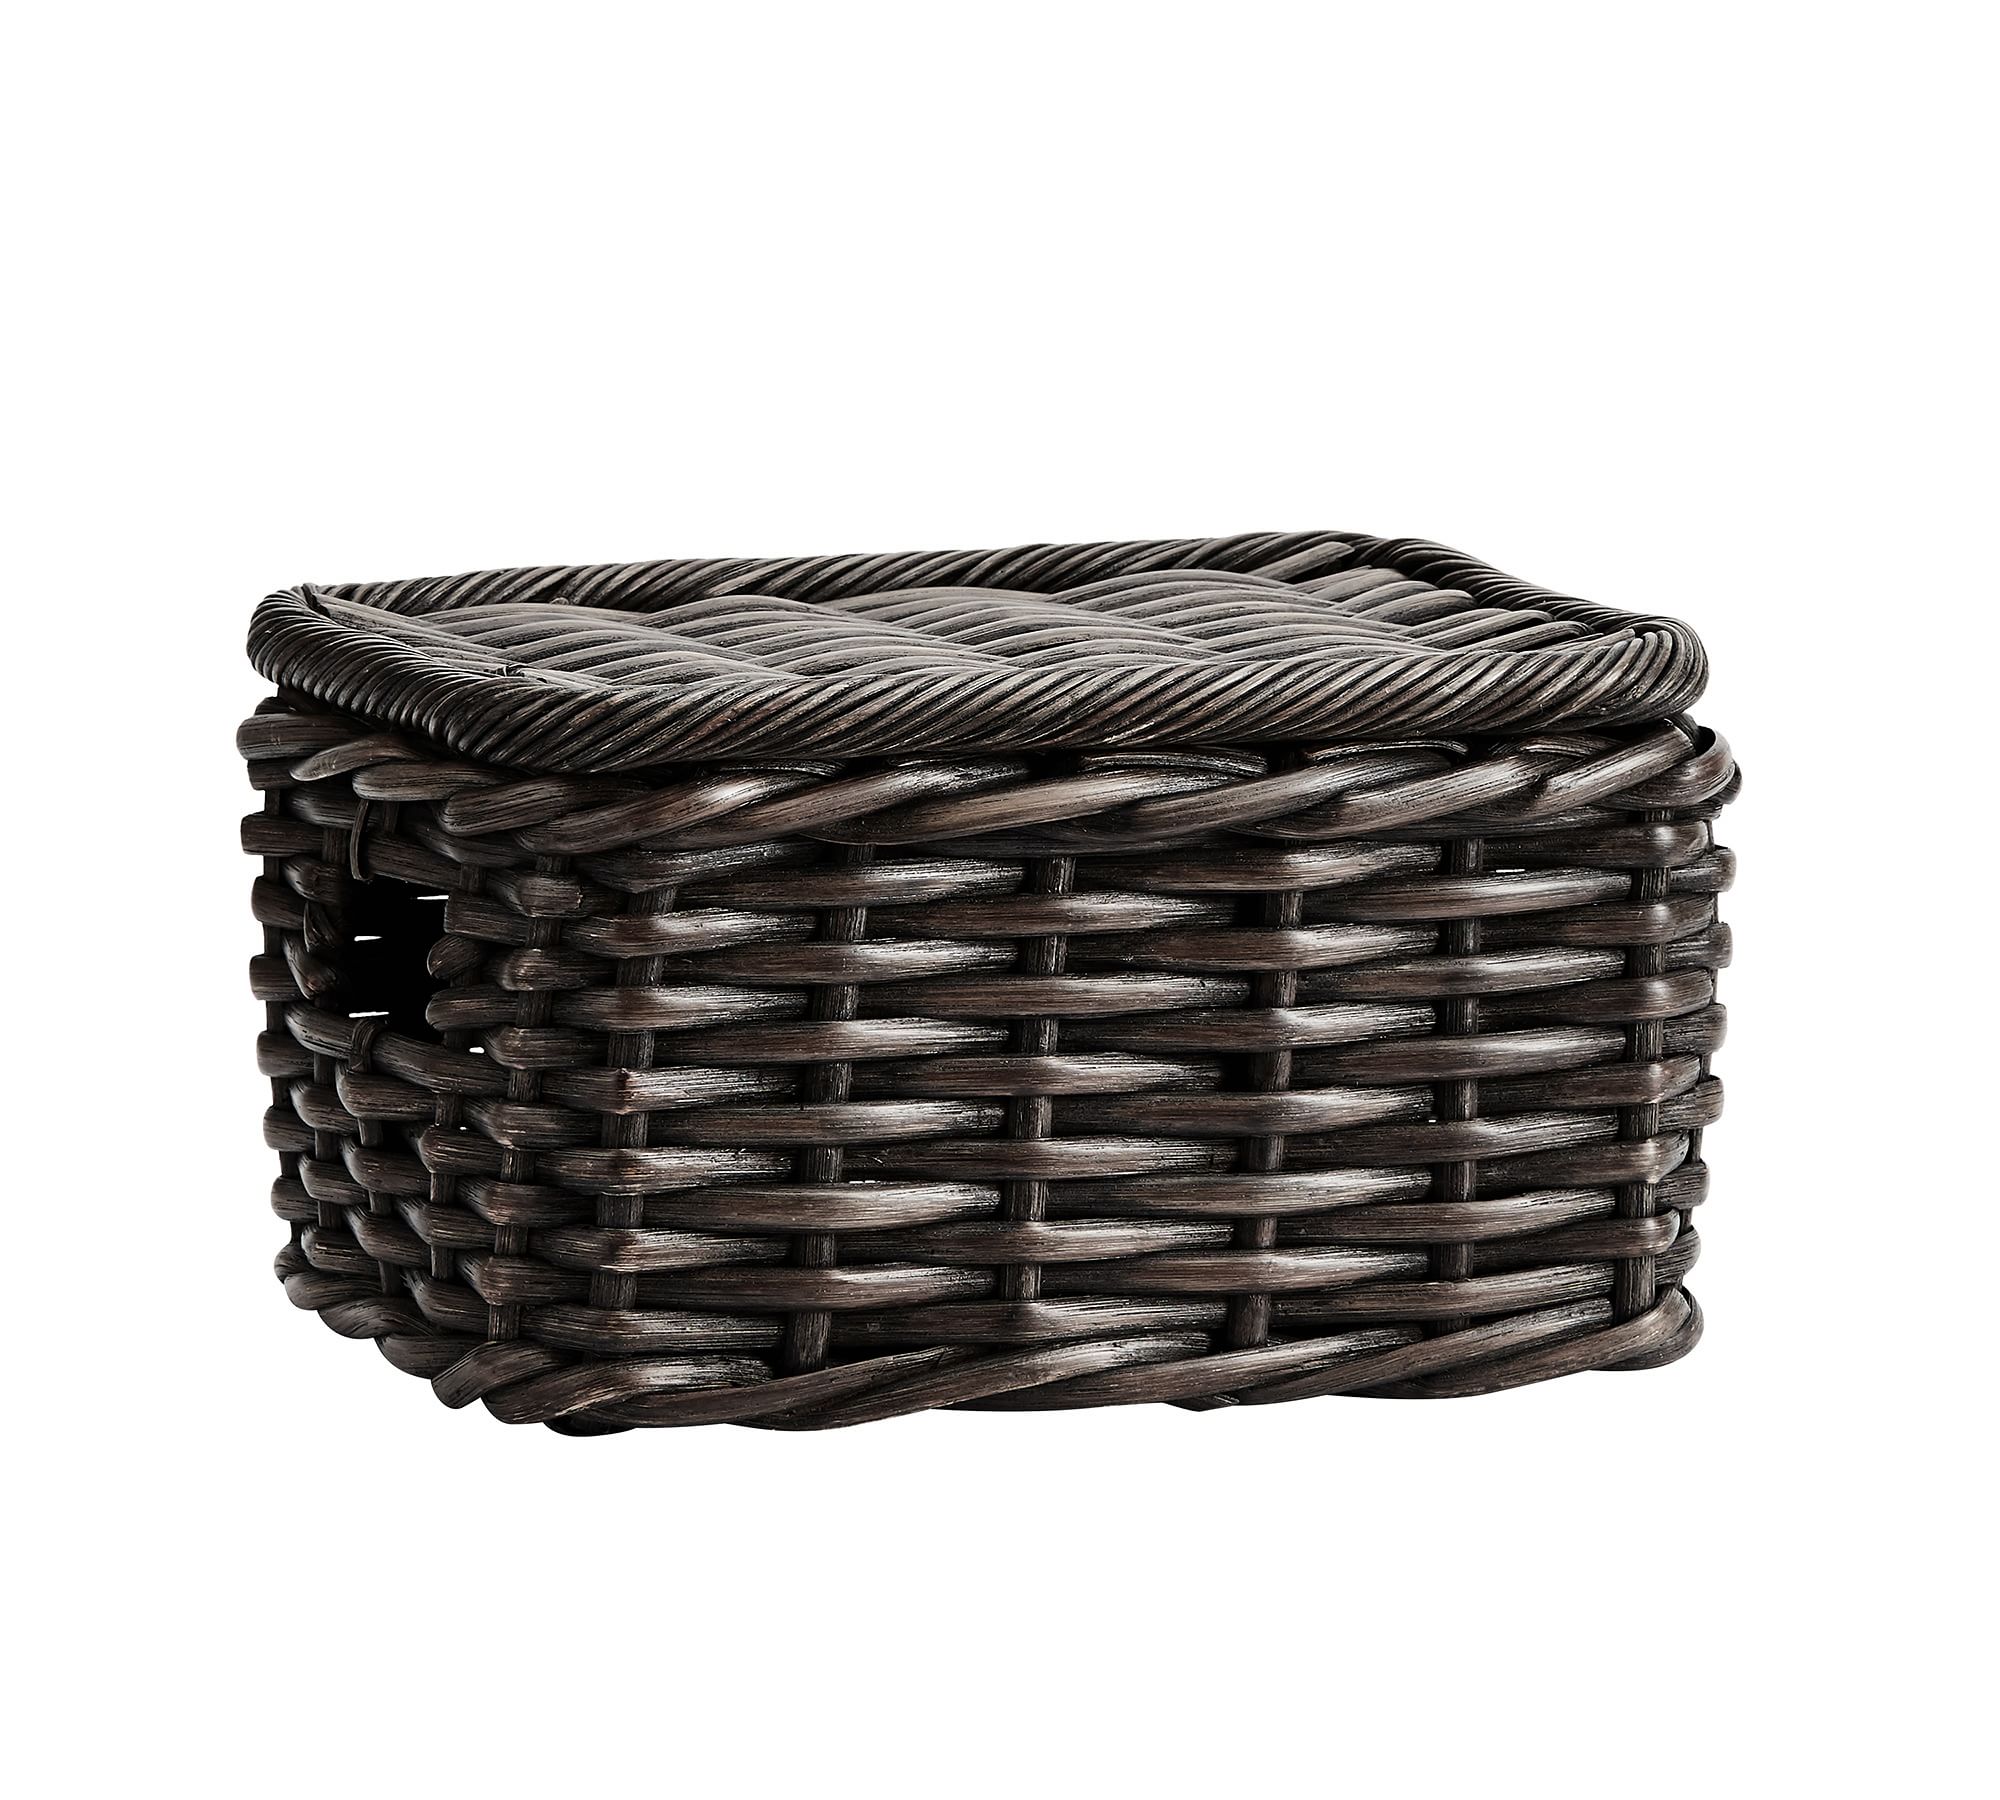 Aubrey Handwoven Lidded Baskets